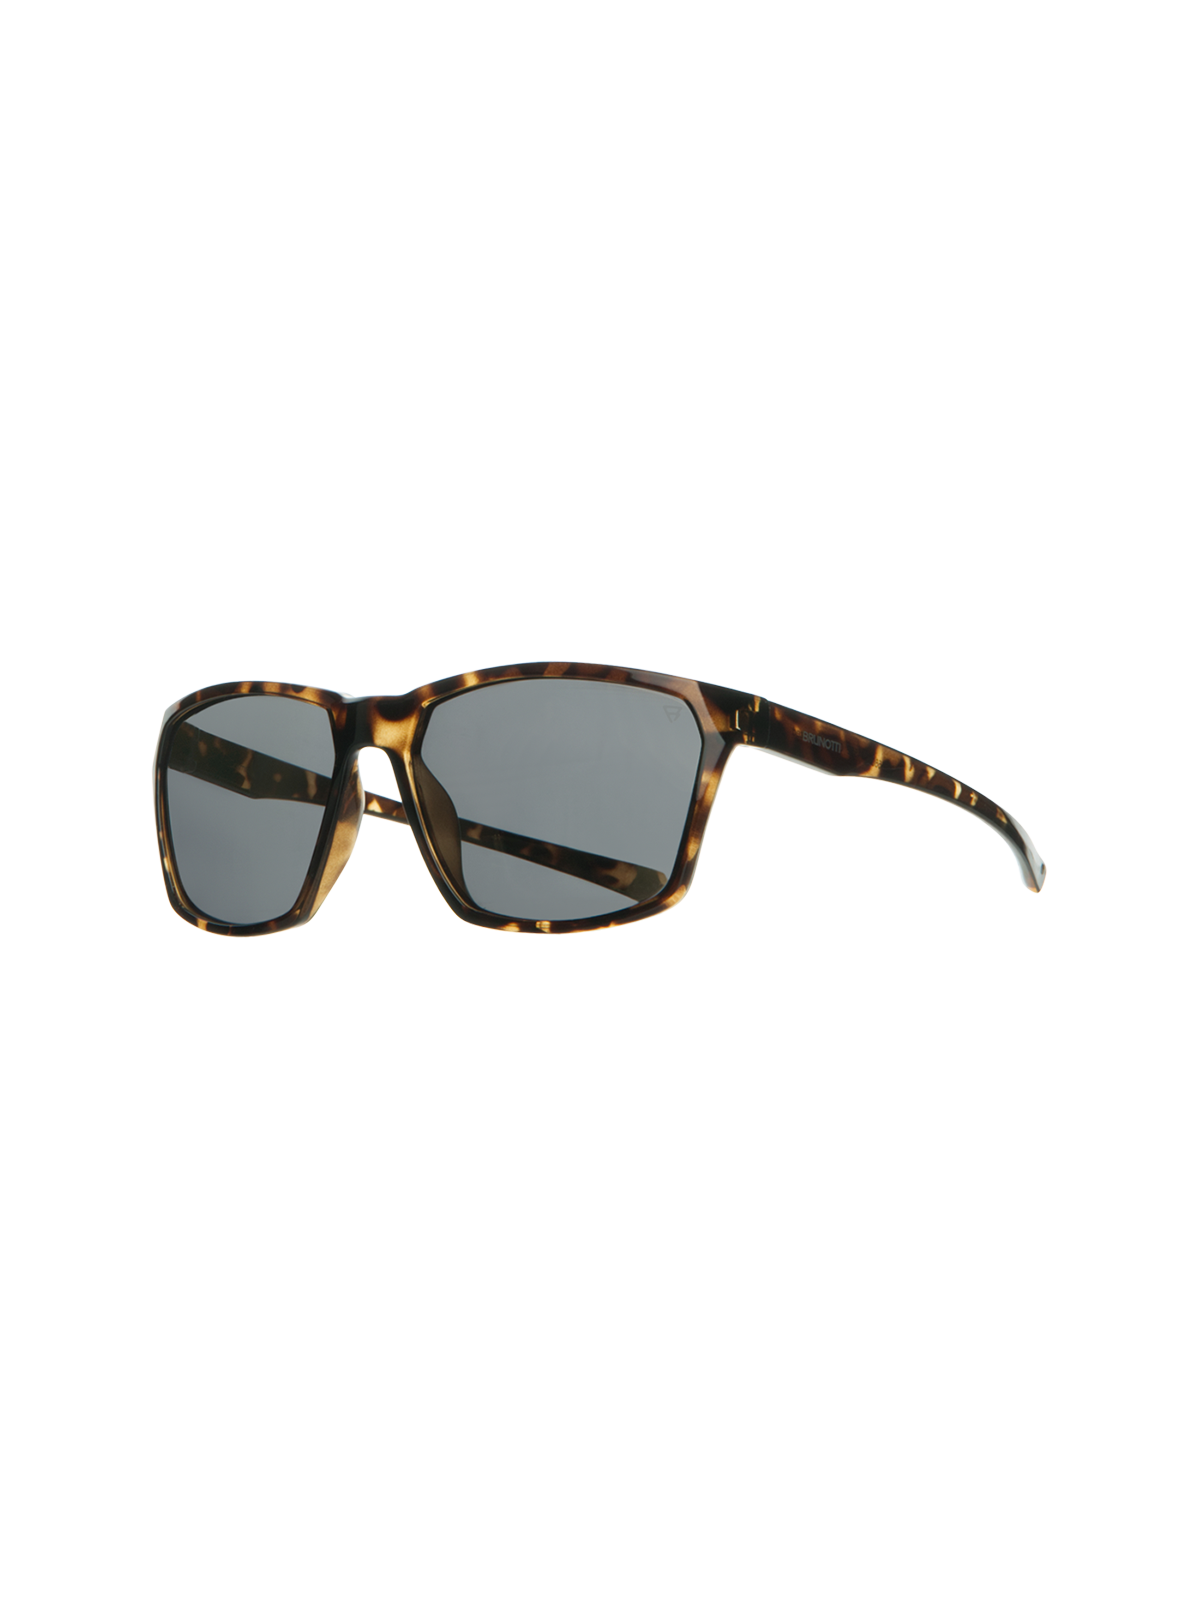 Cosmos Unisex Sunglasses | Brown